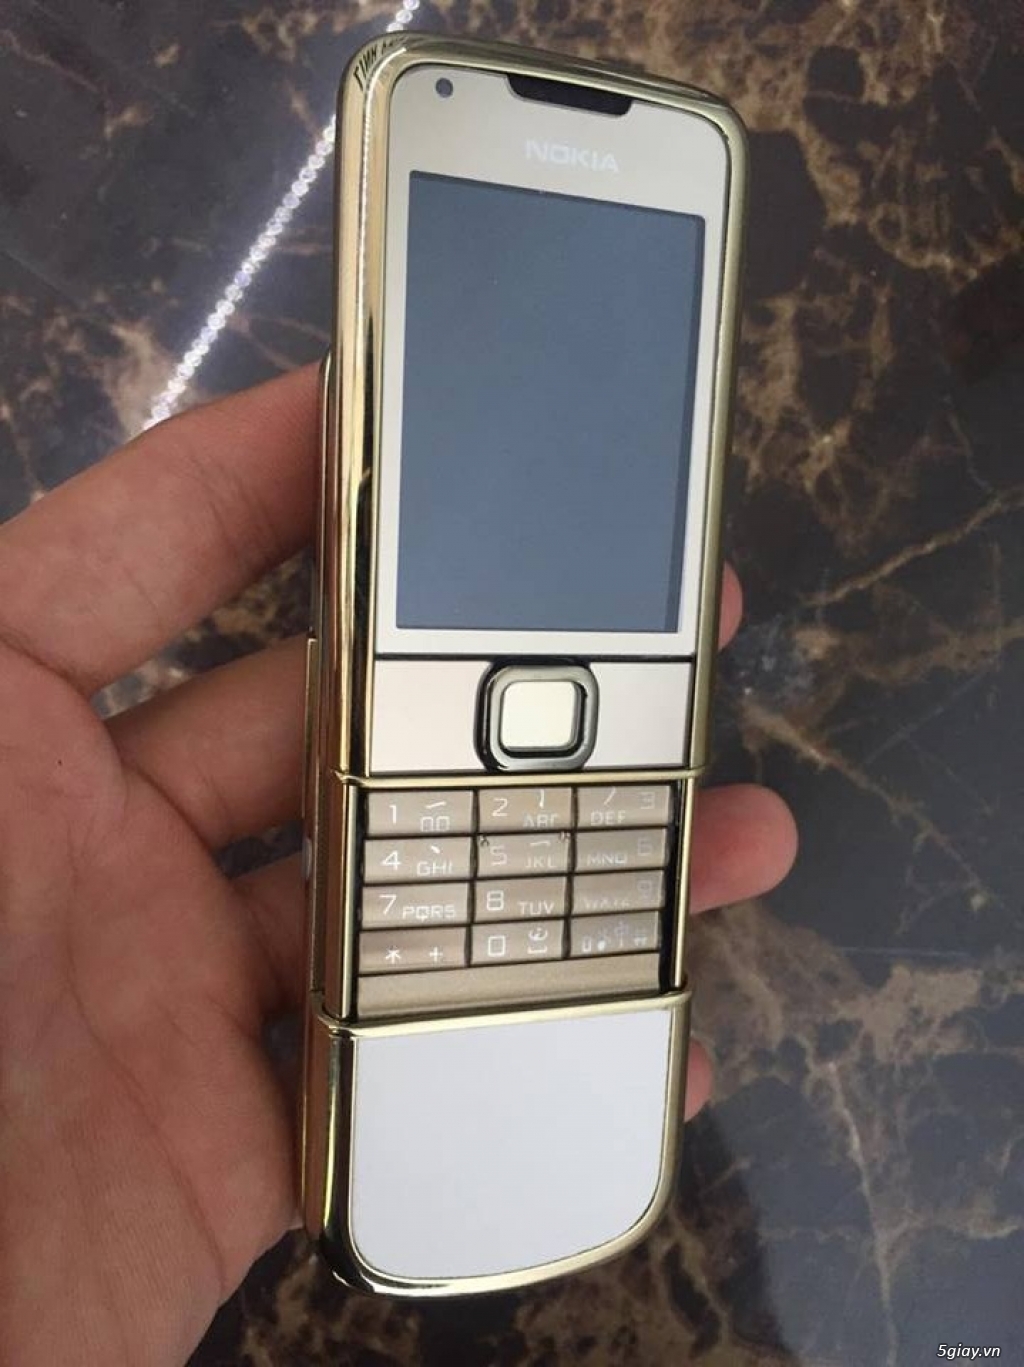 Bán Nokia 8800 gold Arte lên vỏ mới giá rẻ có bảo hành 12 tháng tại - 10